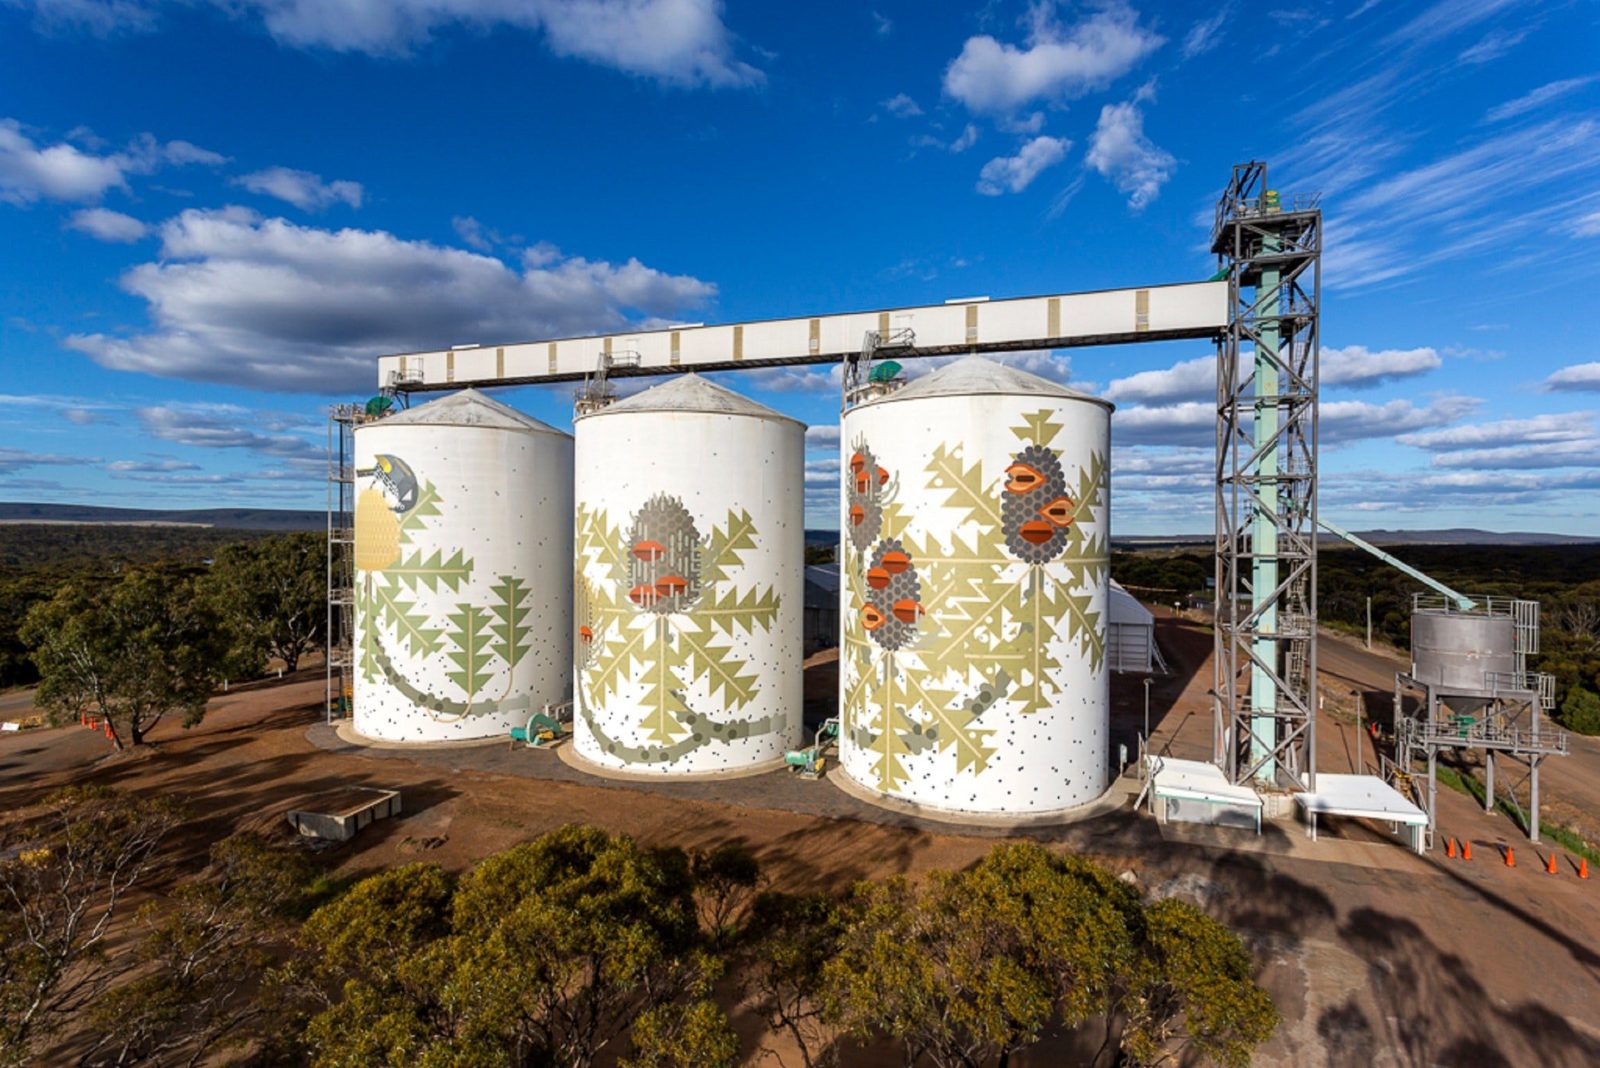 Ravensthorpe's Painted Grain Silos, Western Australia